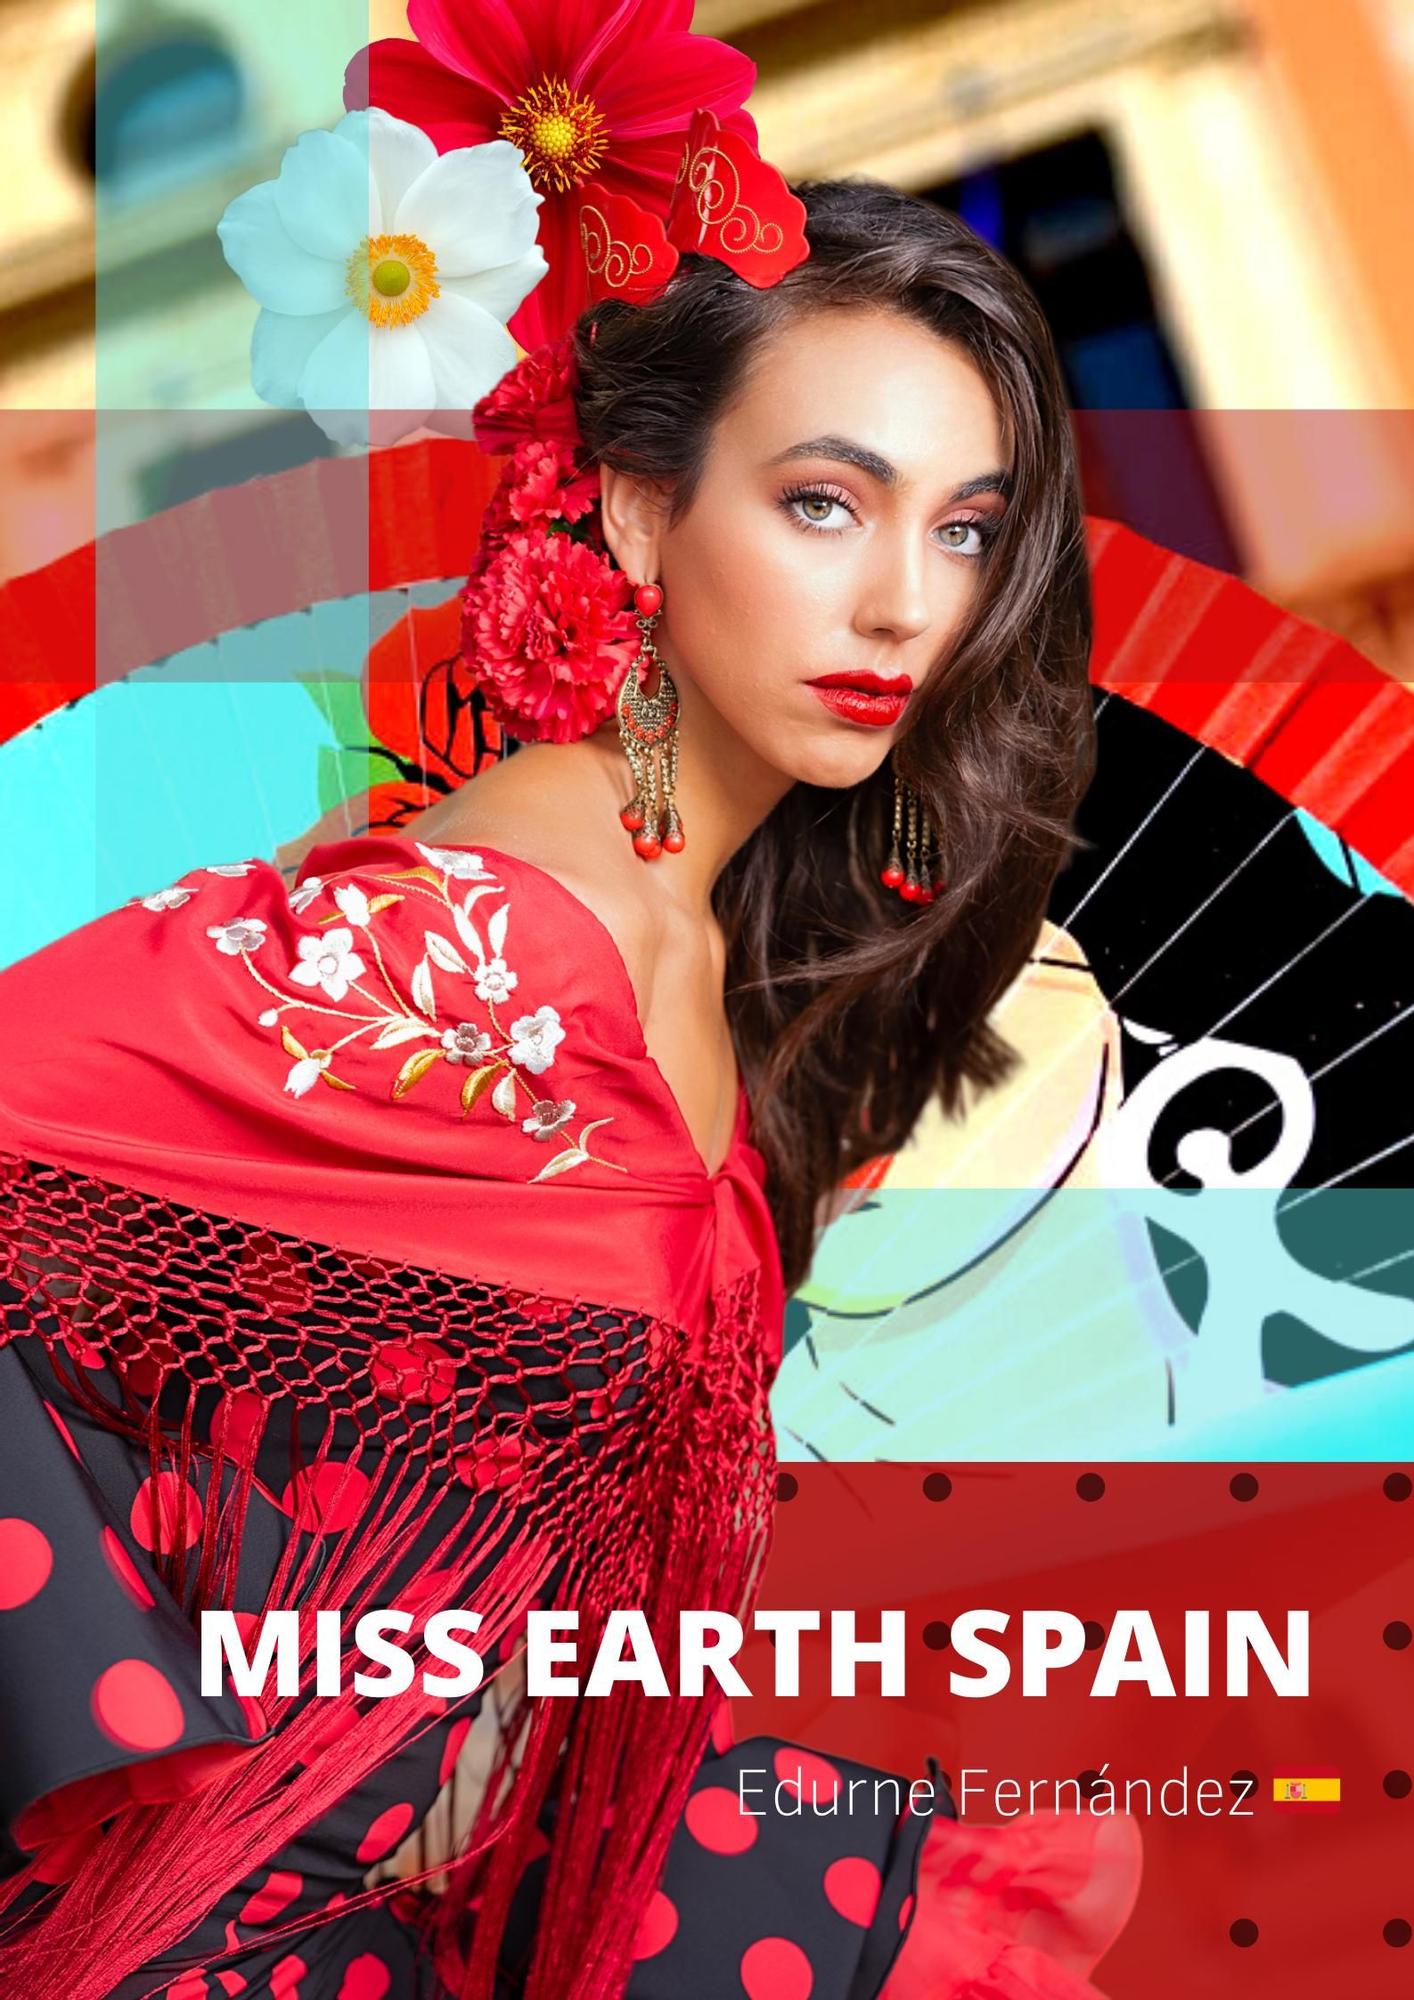 Edurne Fernández, así es la alicantina que ha sido elegida como Miss Earth Spain